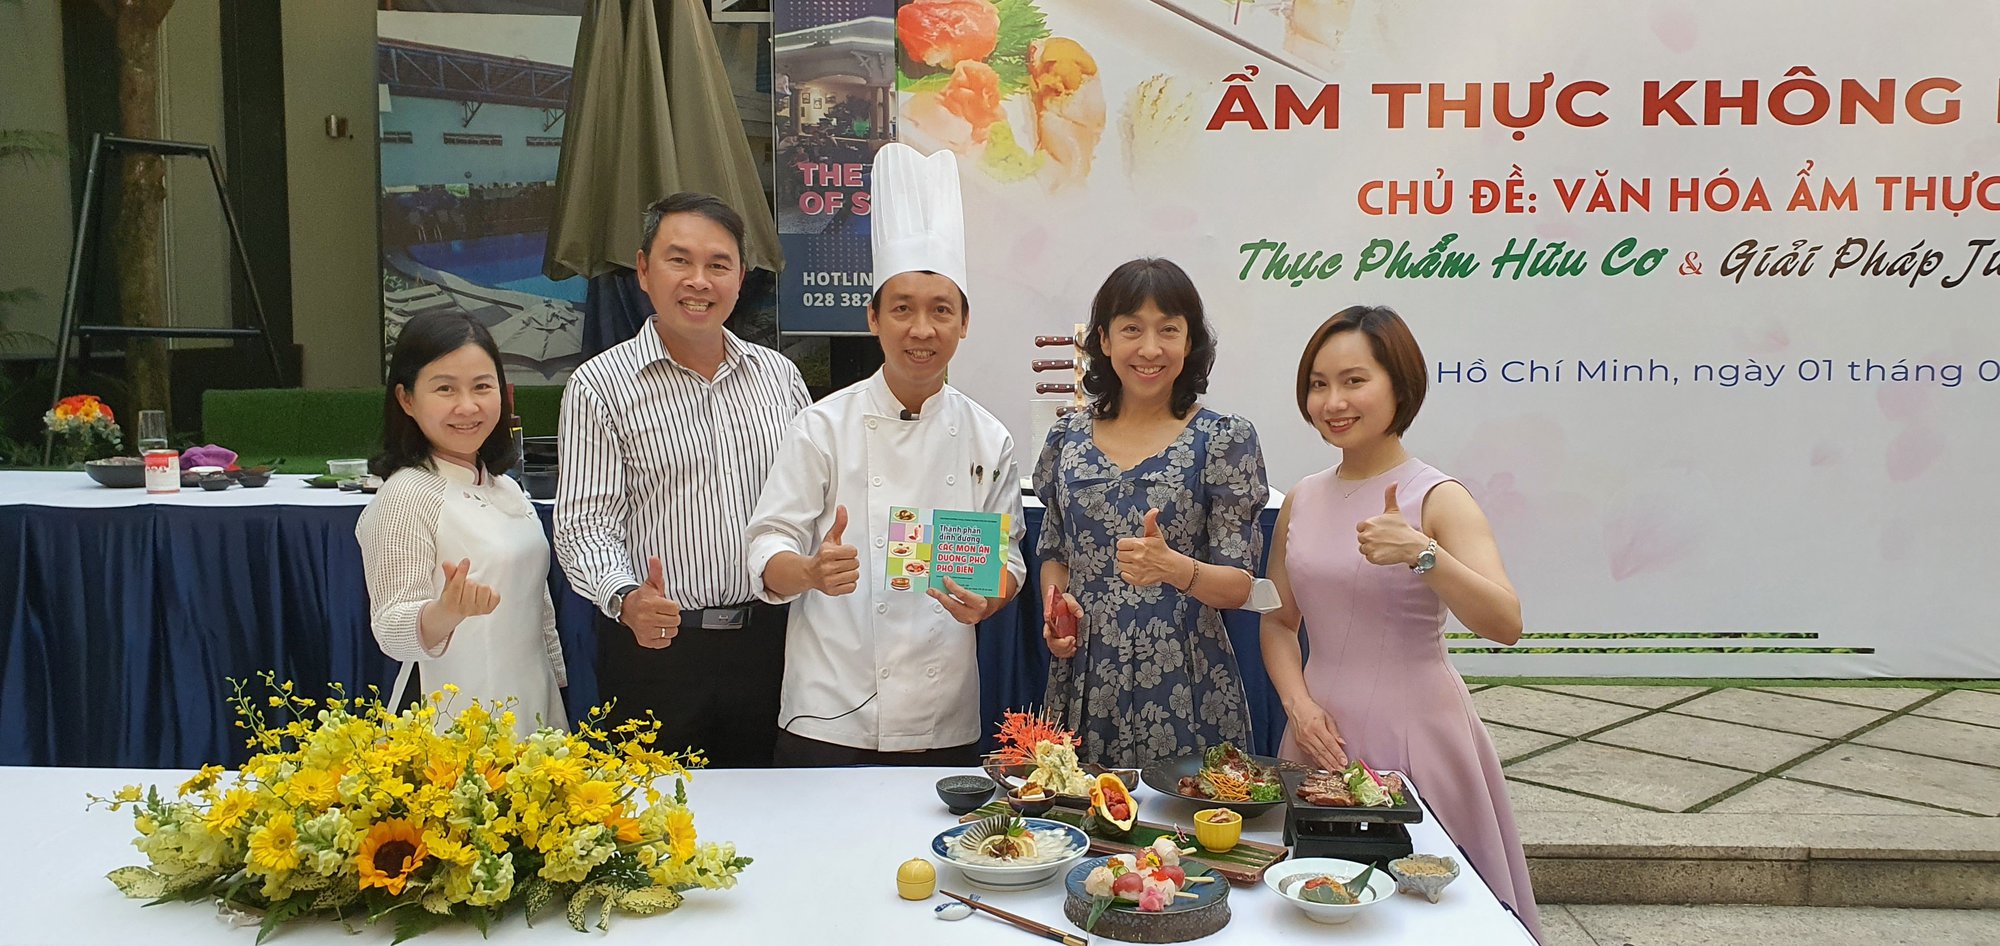 Vũ Thuỳ Linh: Nữ Tiến sĩ cá nóc người Việt đầu tiên, lấy bằng đầu bếp mà tỉ lệ đỗ chỉ khoảng 40-60% và dự định biến cá nóc thành món ăn có giá trị ở Việt Nam - ảnh 12